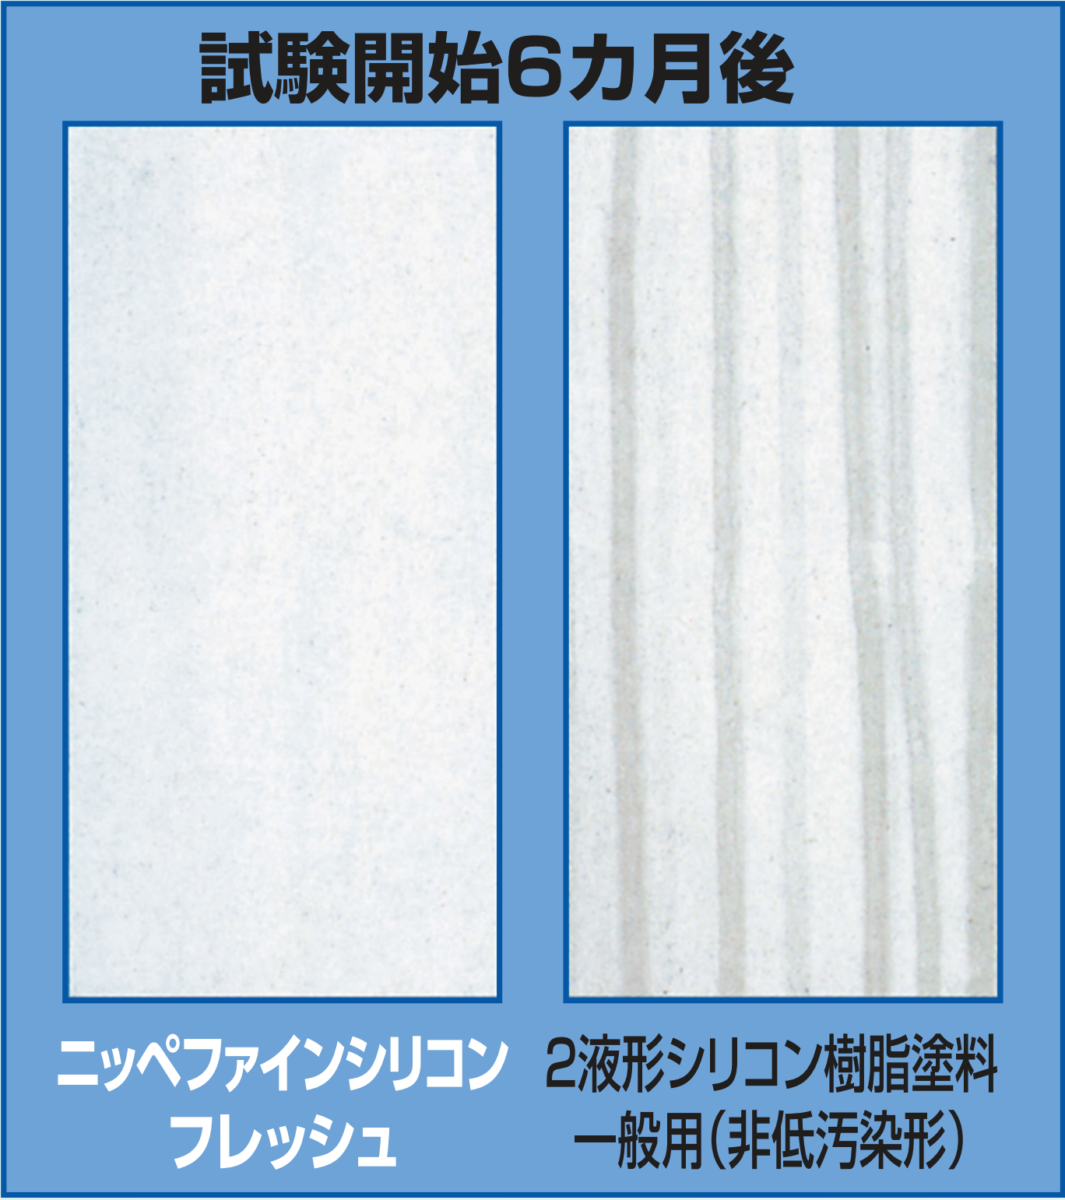 【東京外壁塗装専門店の取り扱い塗料について】ファインシリコンフレッシュ